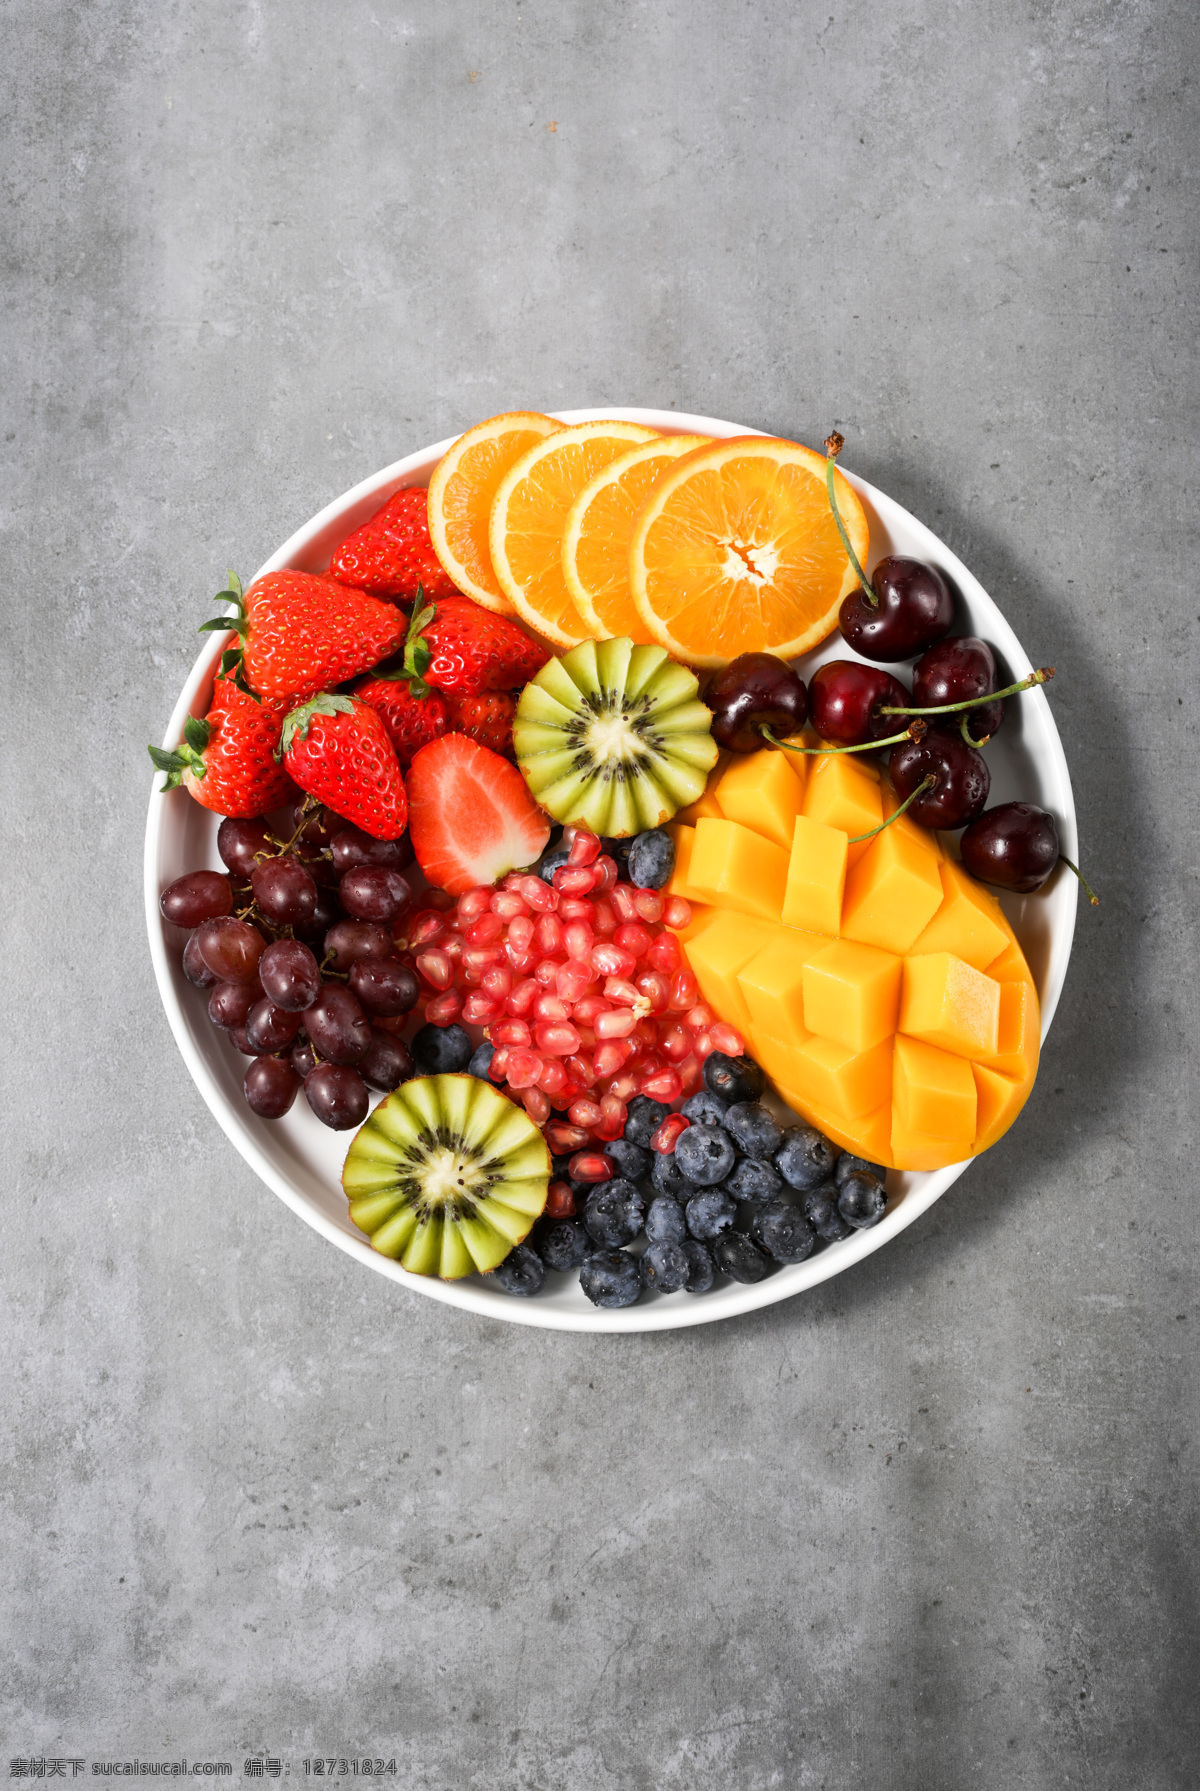 水果盘 水果 橙子 草莓 猕猴桃 芒果 蓝莓 水果切 果盘 餐饮美食 食物原料